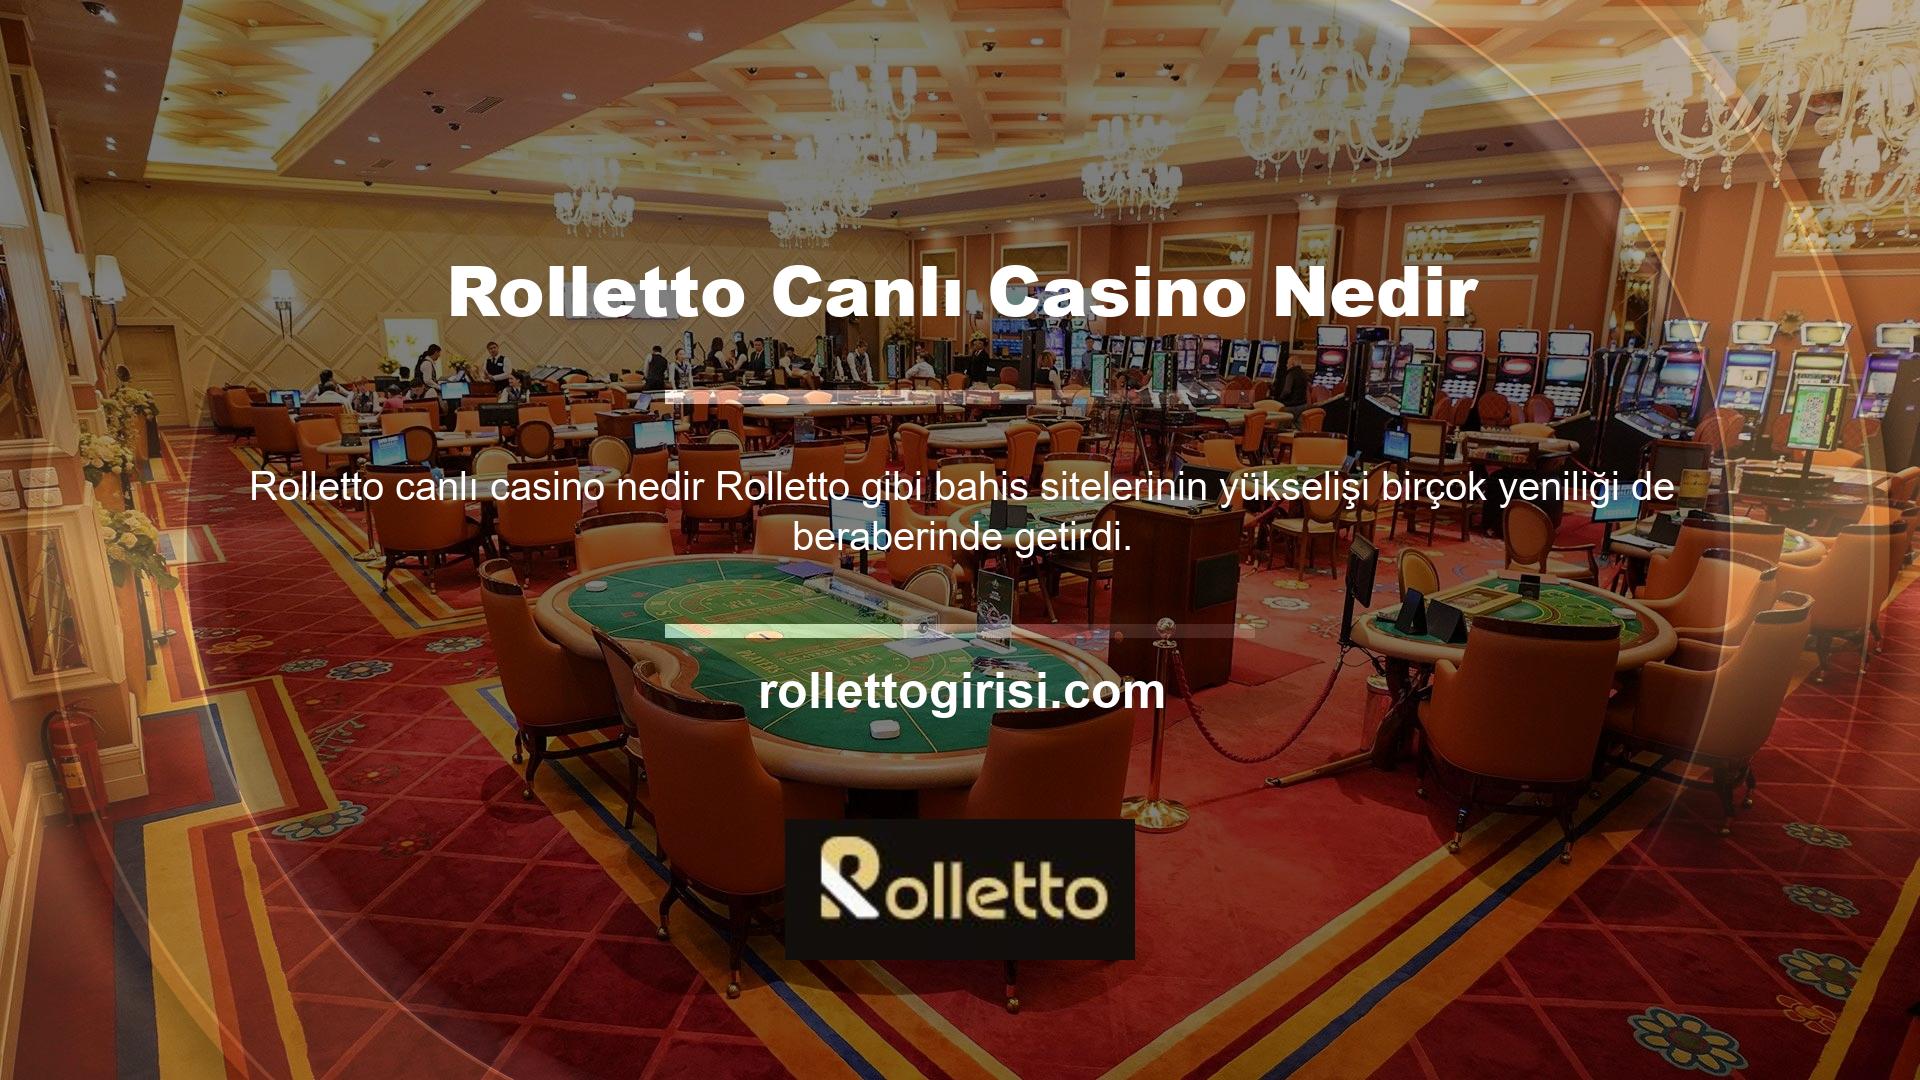 Rolletto Canlı Casino Nedir? Canlı casino giriş sayfasına tıkladığınızda karşınıza çeşitli seçenekler sunulacaktır